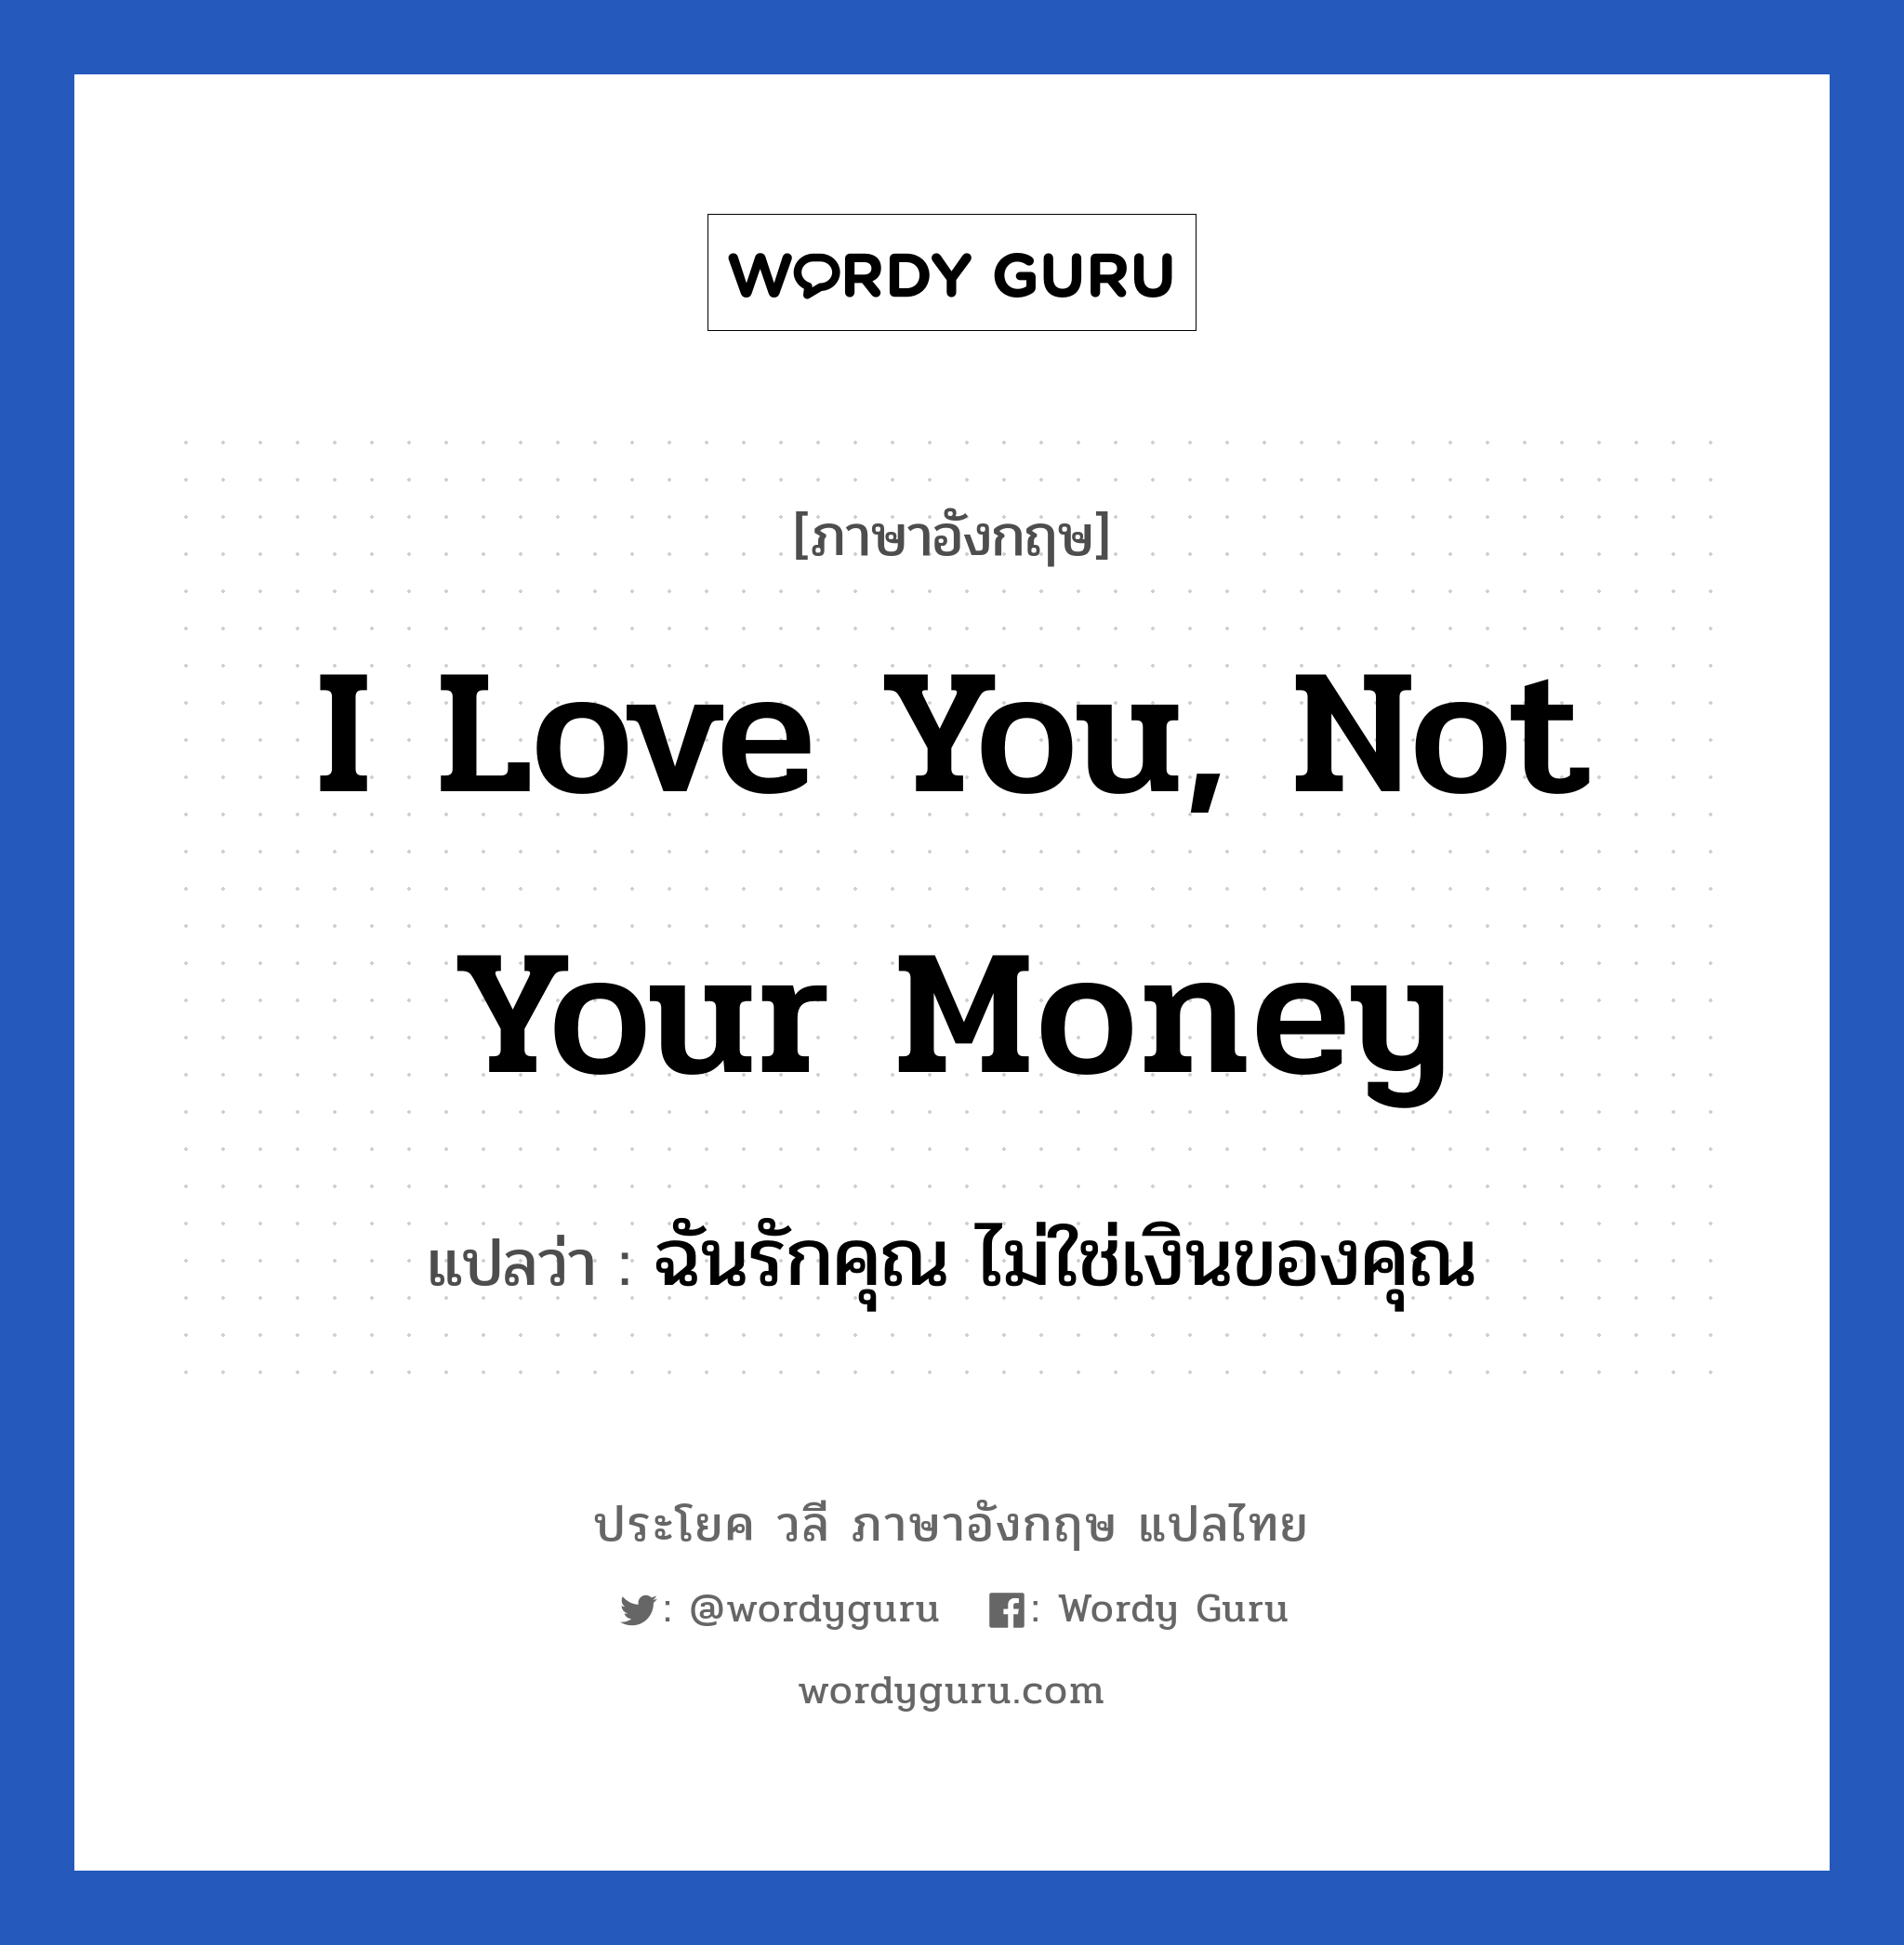 ฉันรักคุณ ไม่ใช่เงินของคุณ ภาษาอังกฤษ?, วลีภาษาอังกฤษ ฉันรักคุณ ไม่ใช่เงินของคุณ แปลว่า I love you, not your money หมวด ความรัก